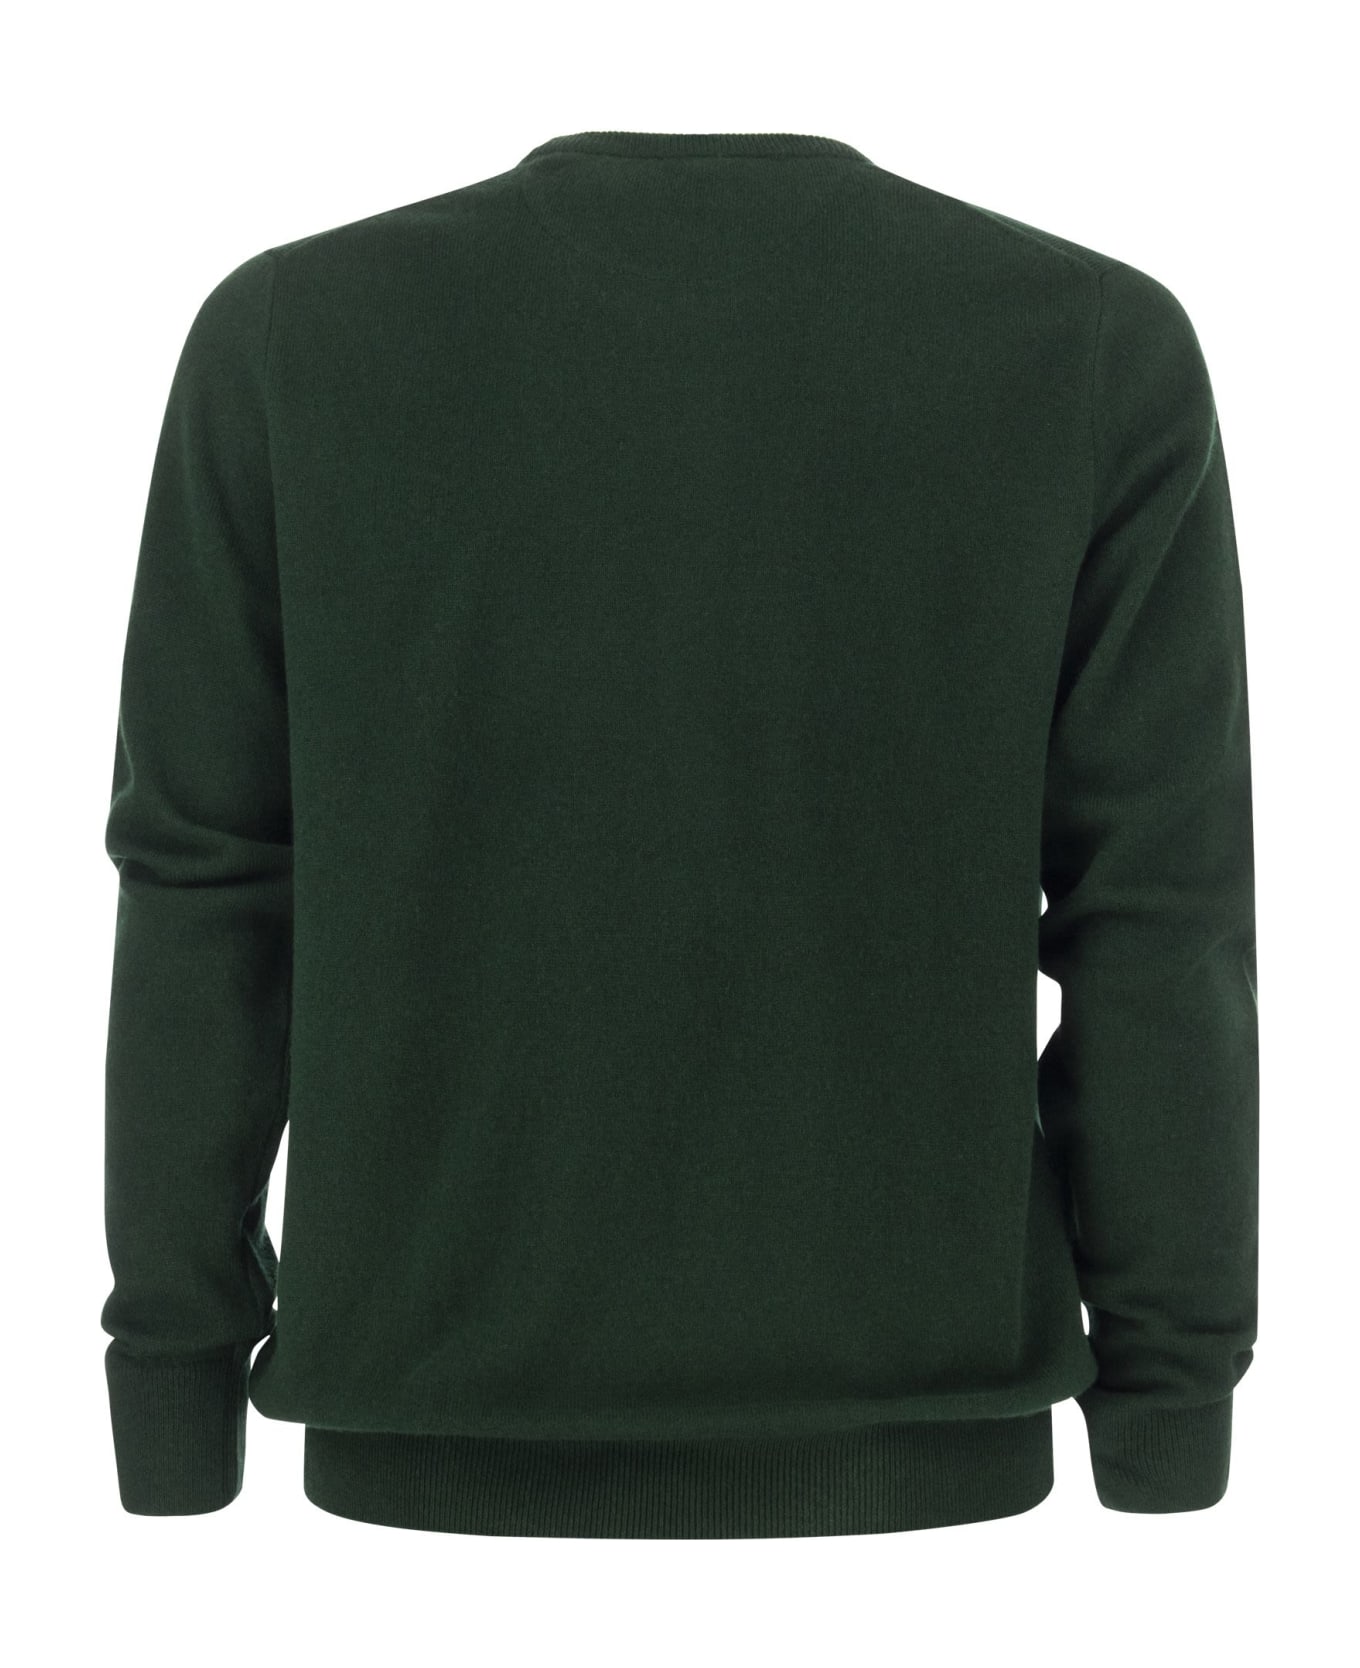 Polo Ralph Lauren Green Wool Sweater - Green